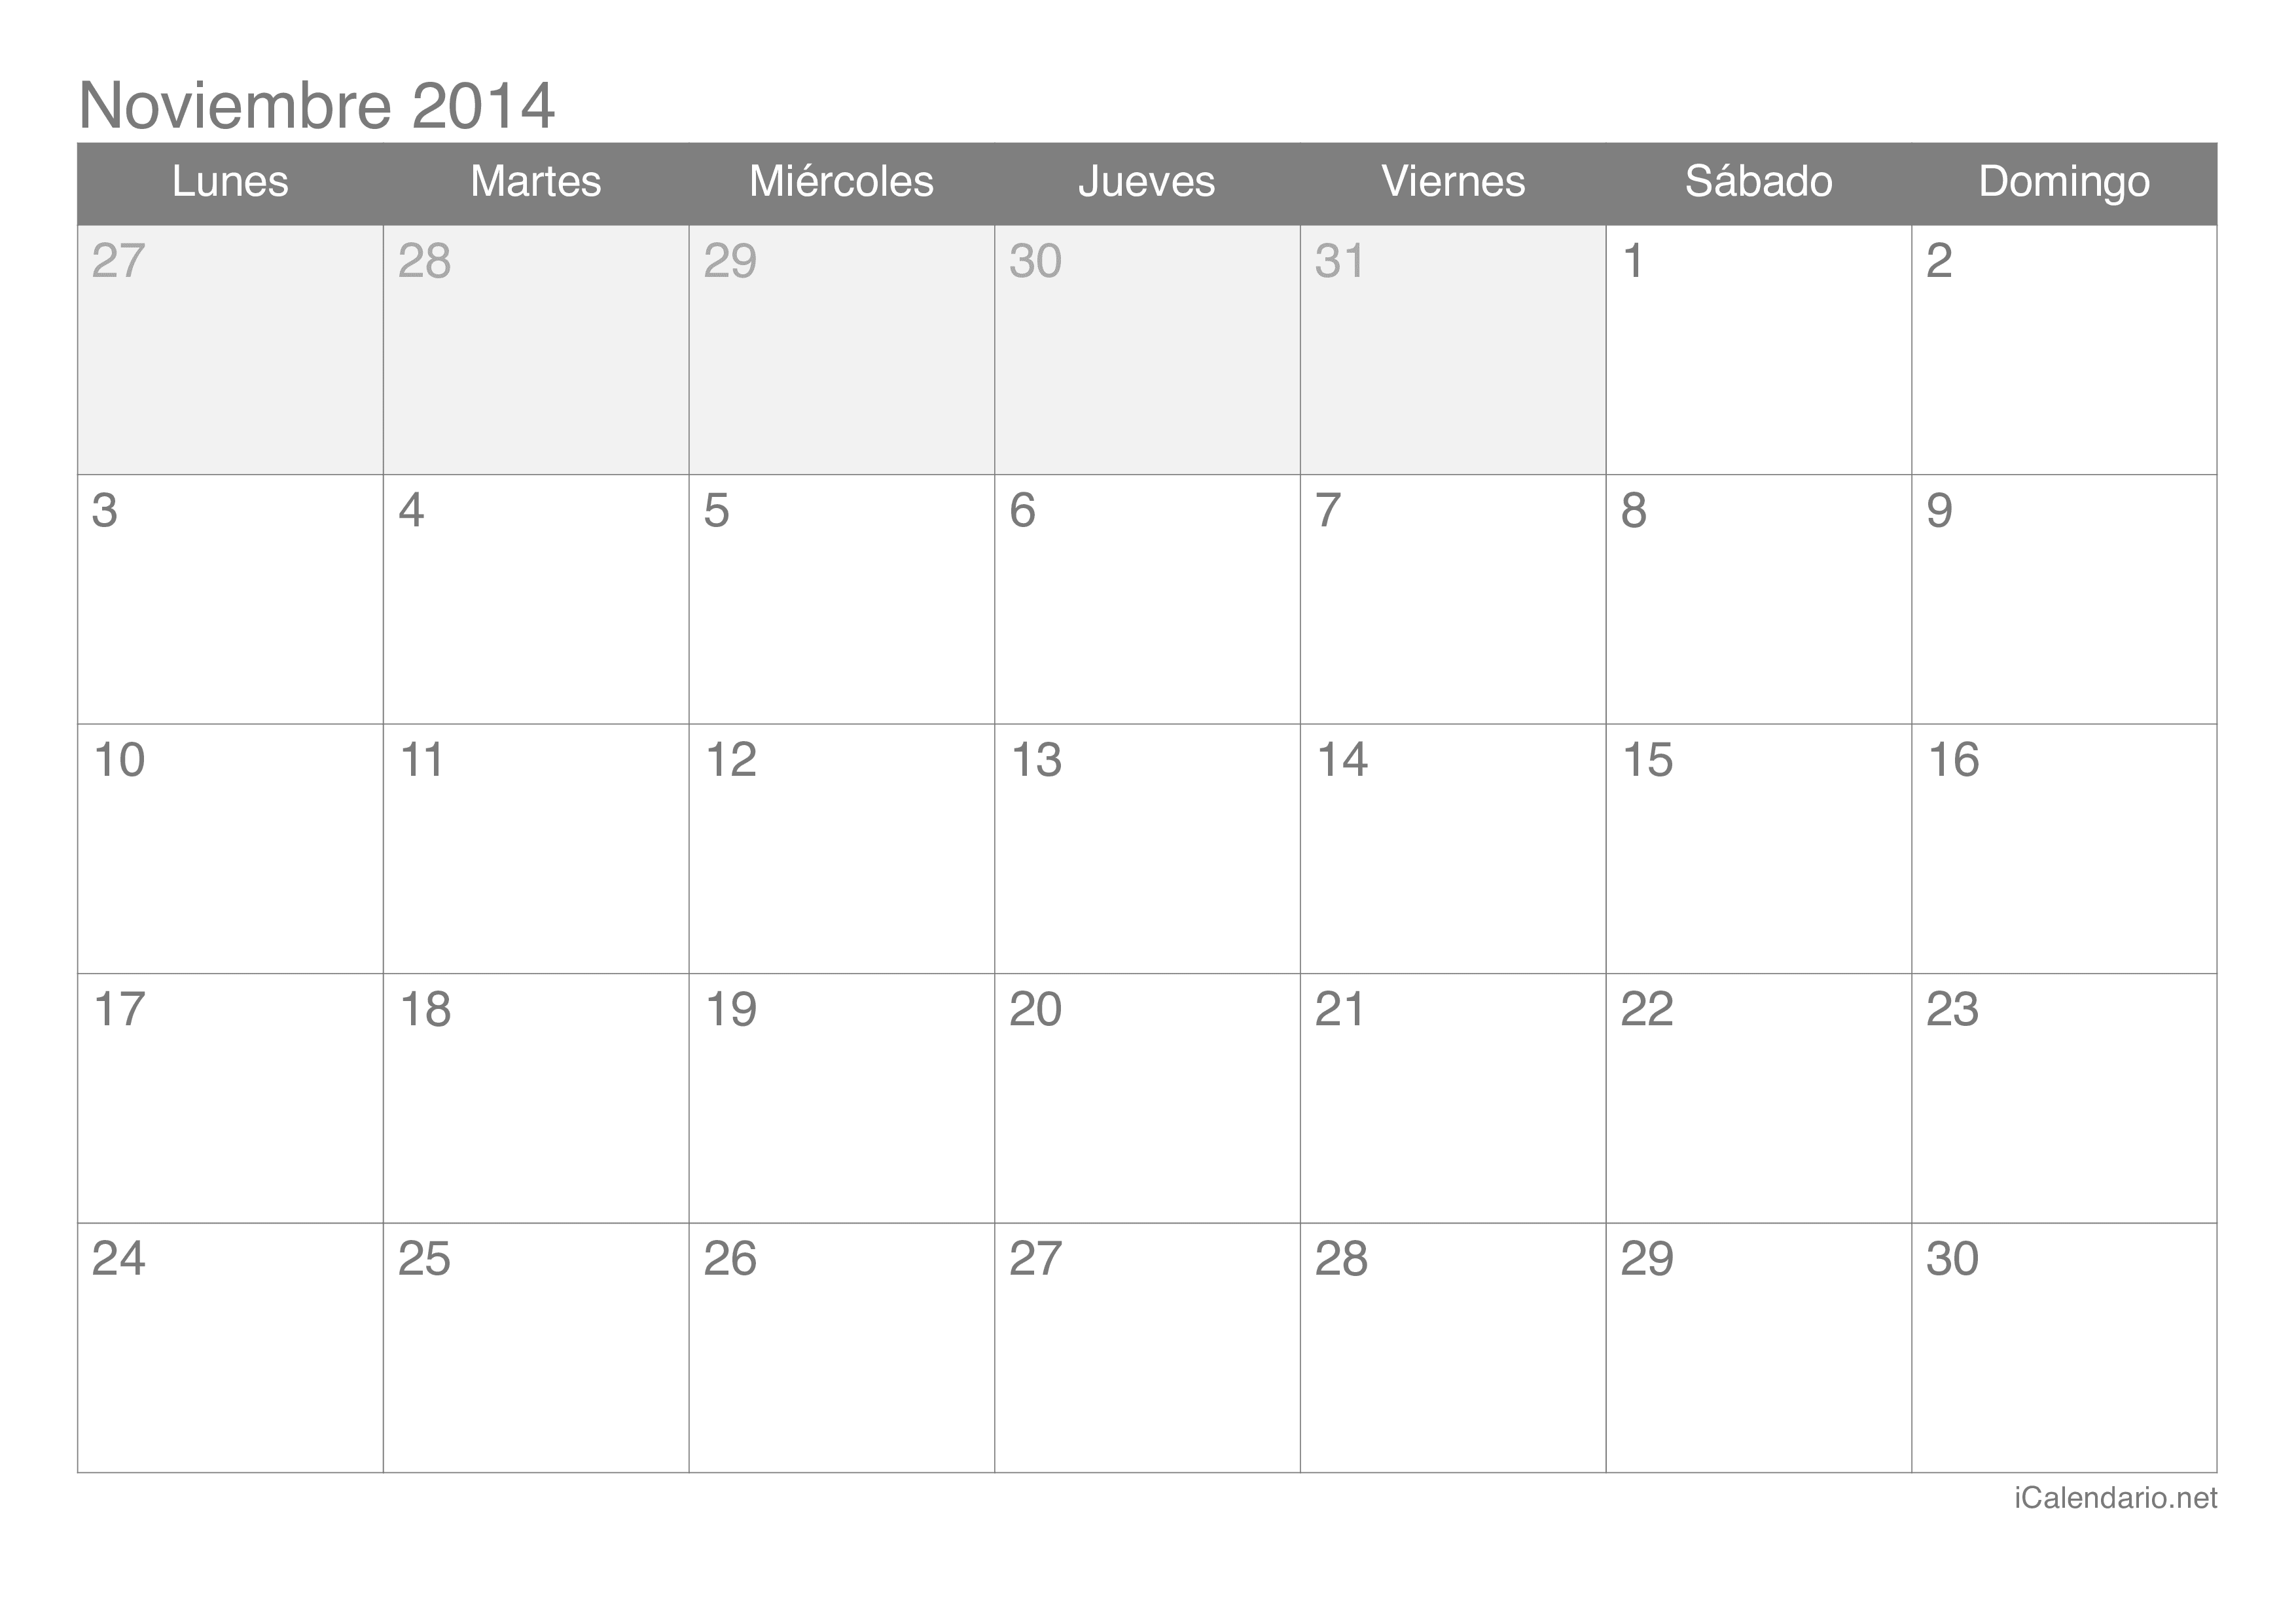 Calendario Noviembre 2014 en Excel, Calendario 2014 para 